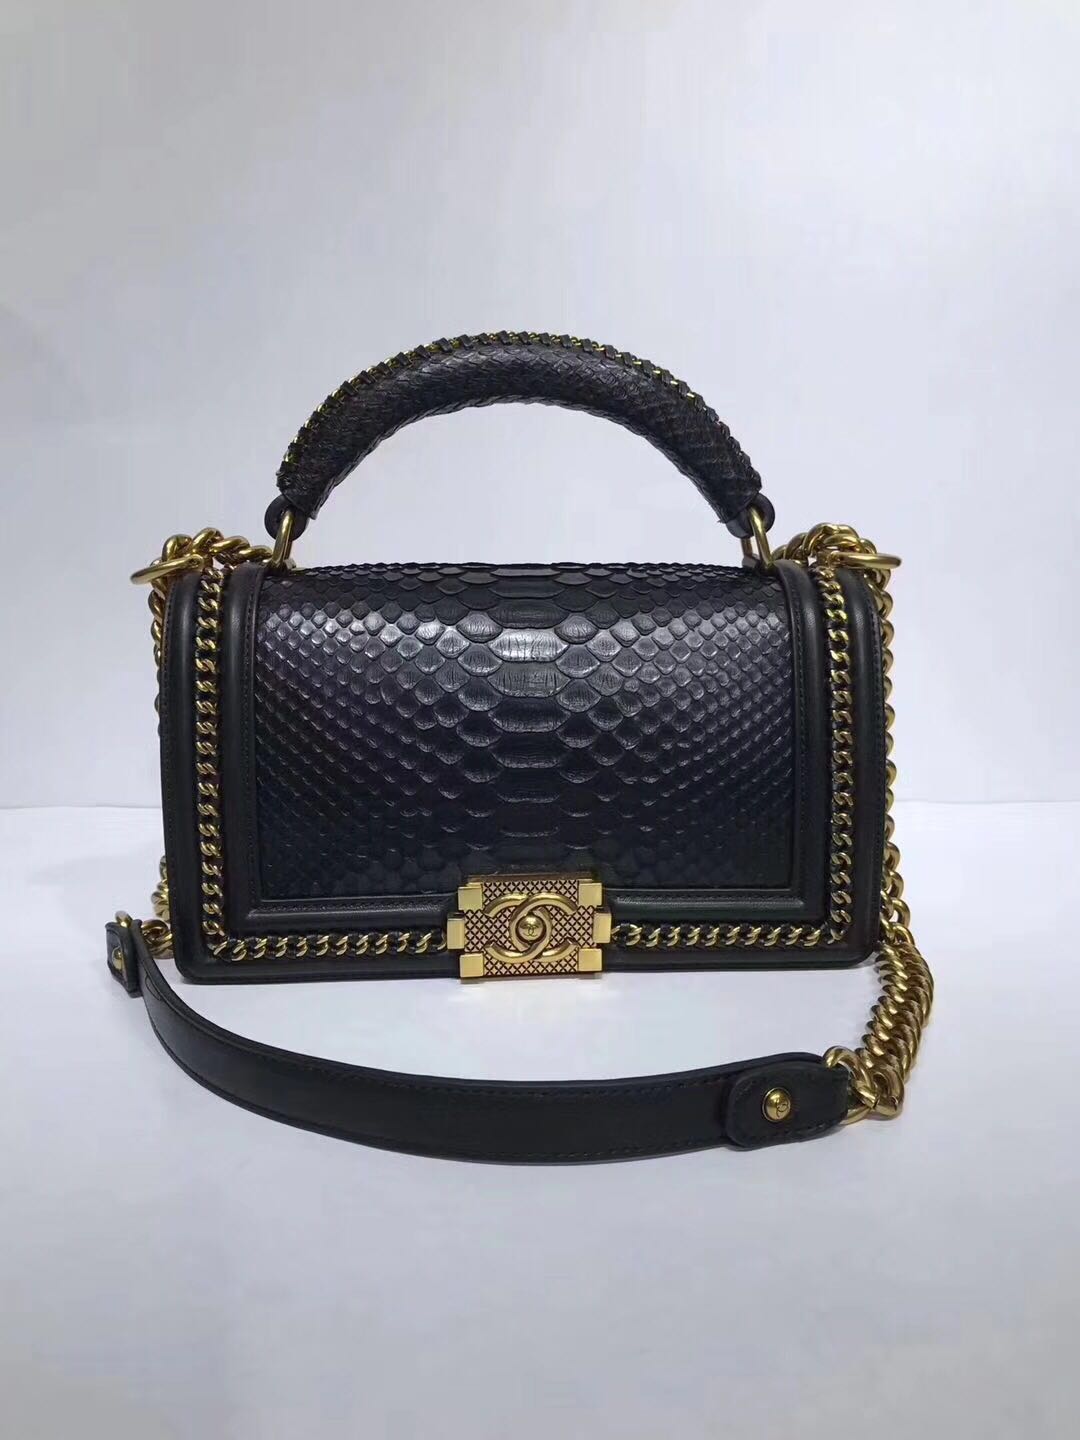 Boy Chanel Flap Shoulder Bag original Snake leather 67086 black